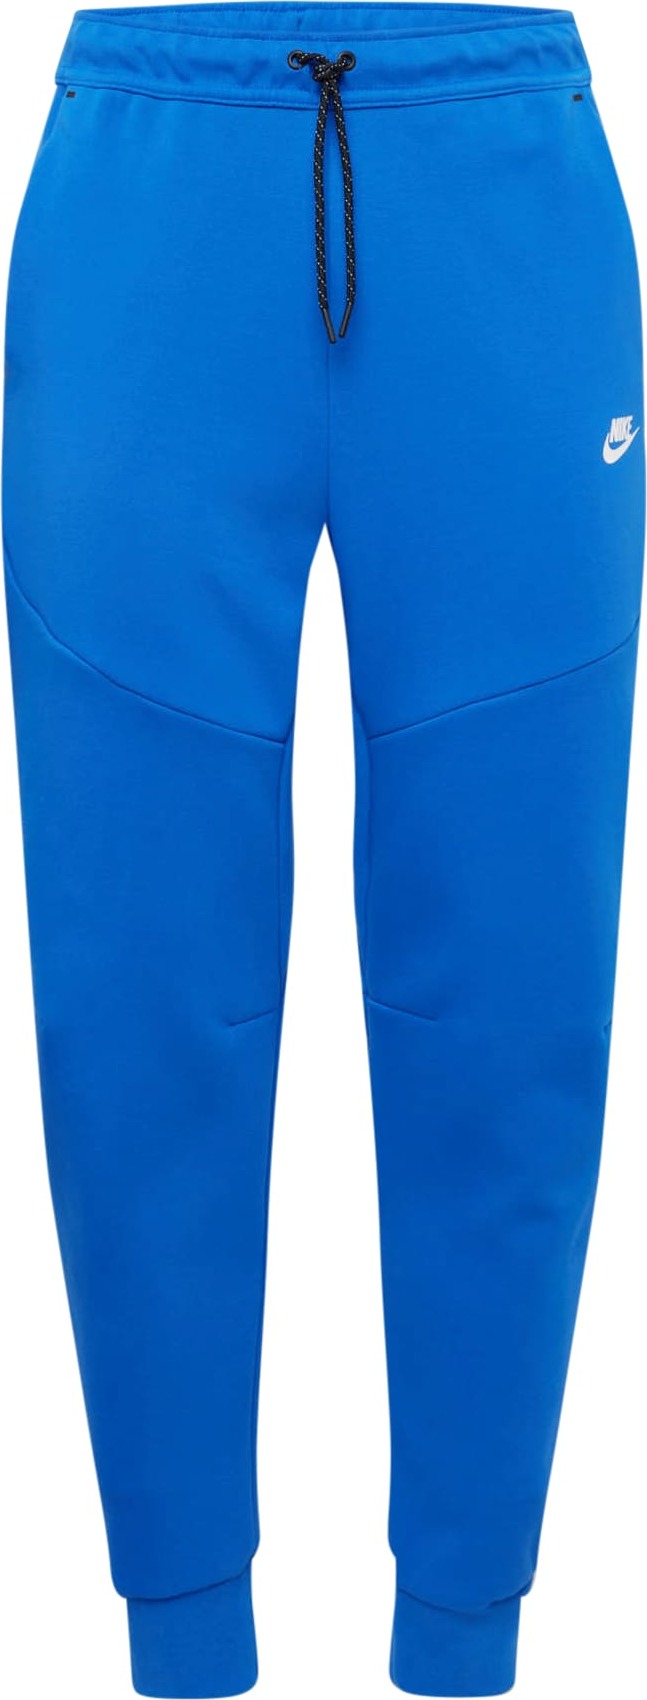 Kalhoty Nike Sportswear královská modrá / bílá